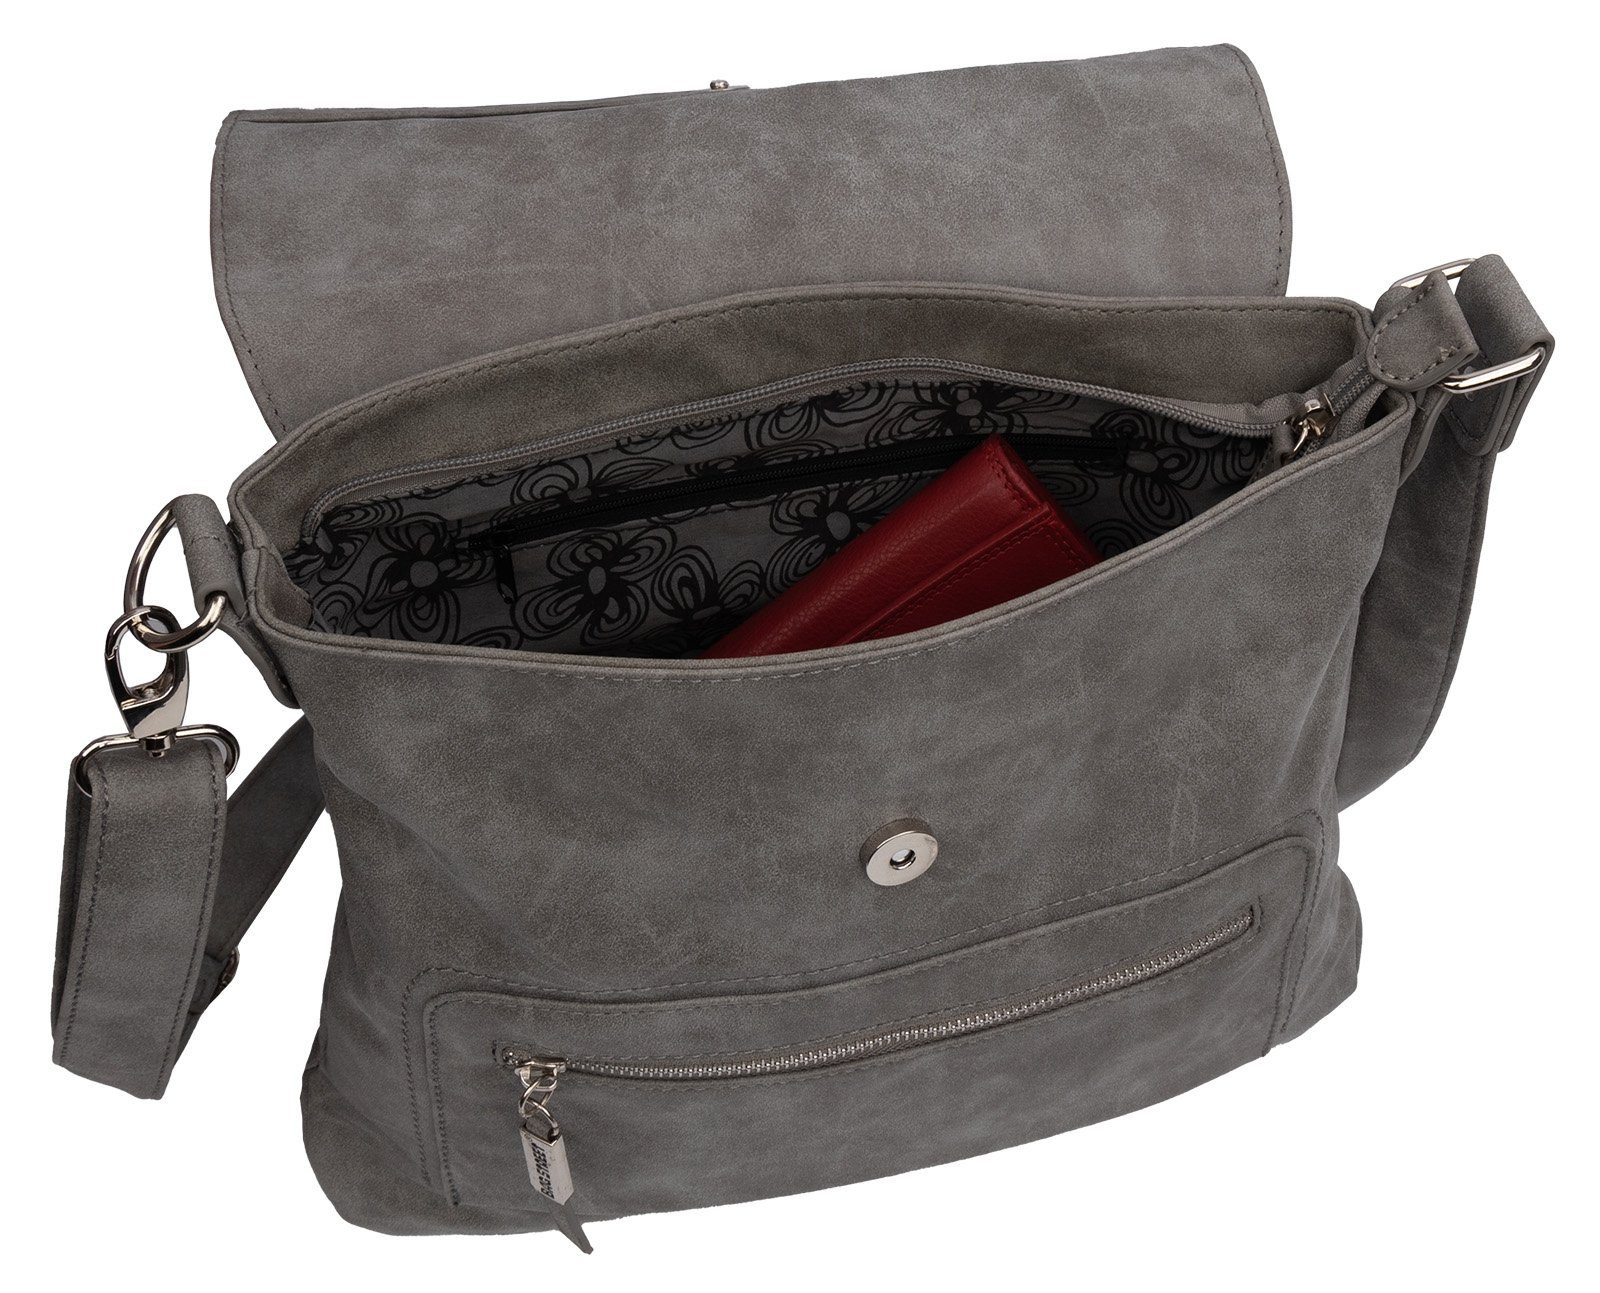 STREET BAG als Umhängetasche T0103, Street GRAU Bag tragbar Handtasche Schultertasche Damentasche Umhängetasche Schultertasche, Schlüsseltasche